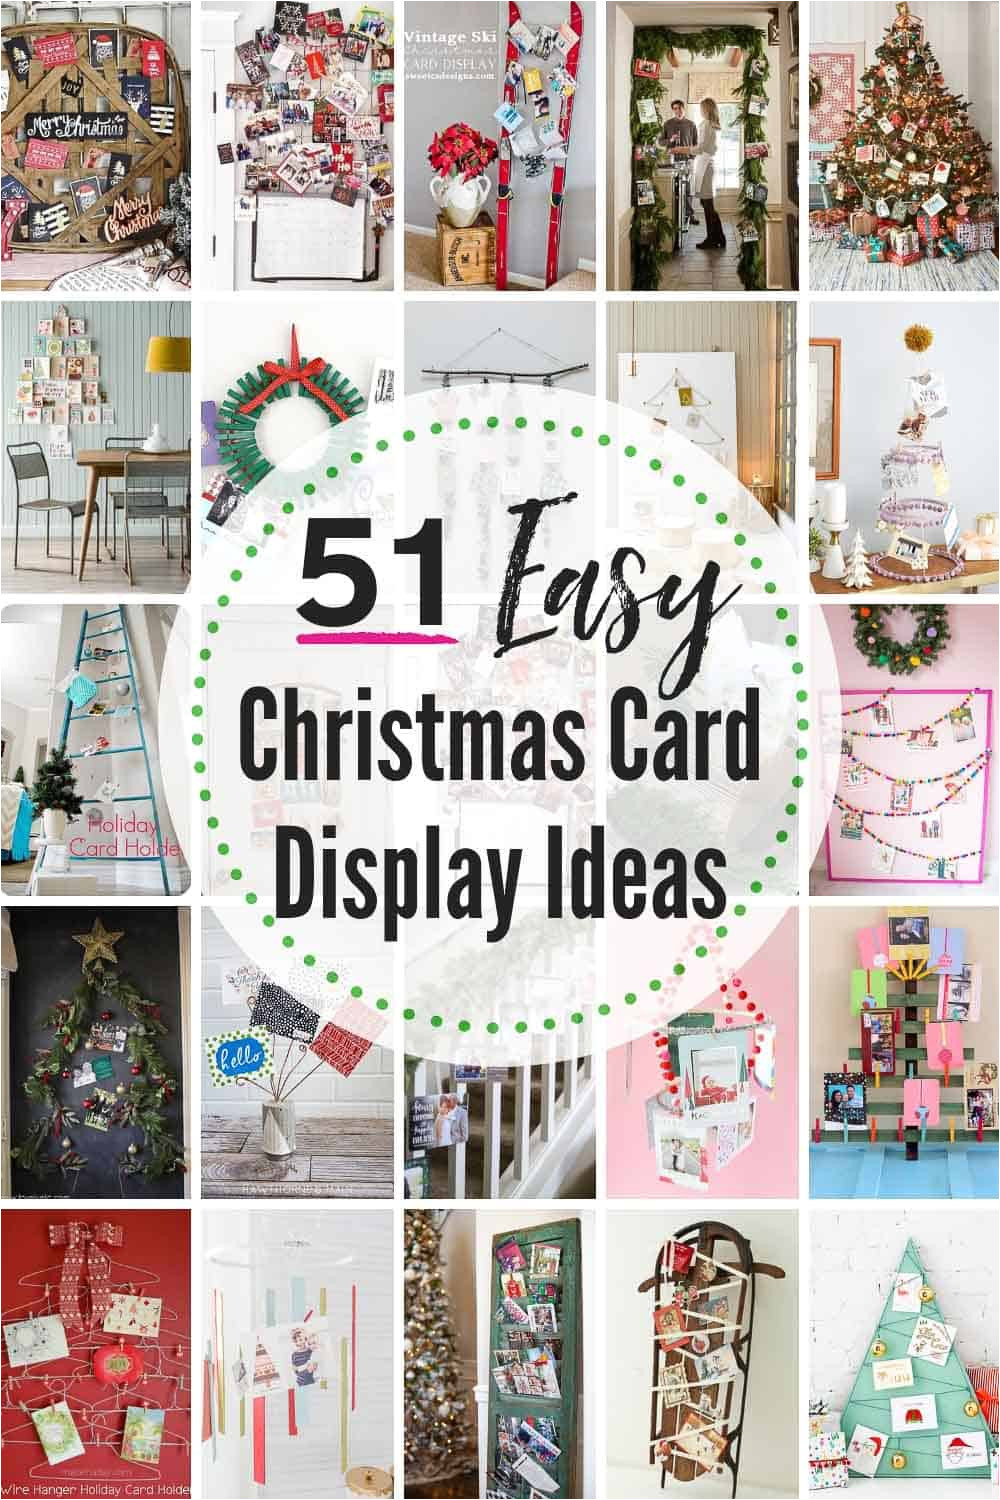 50 easy christmas card display ideas 2 jpg